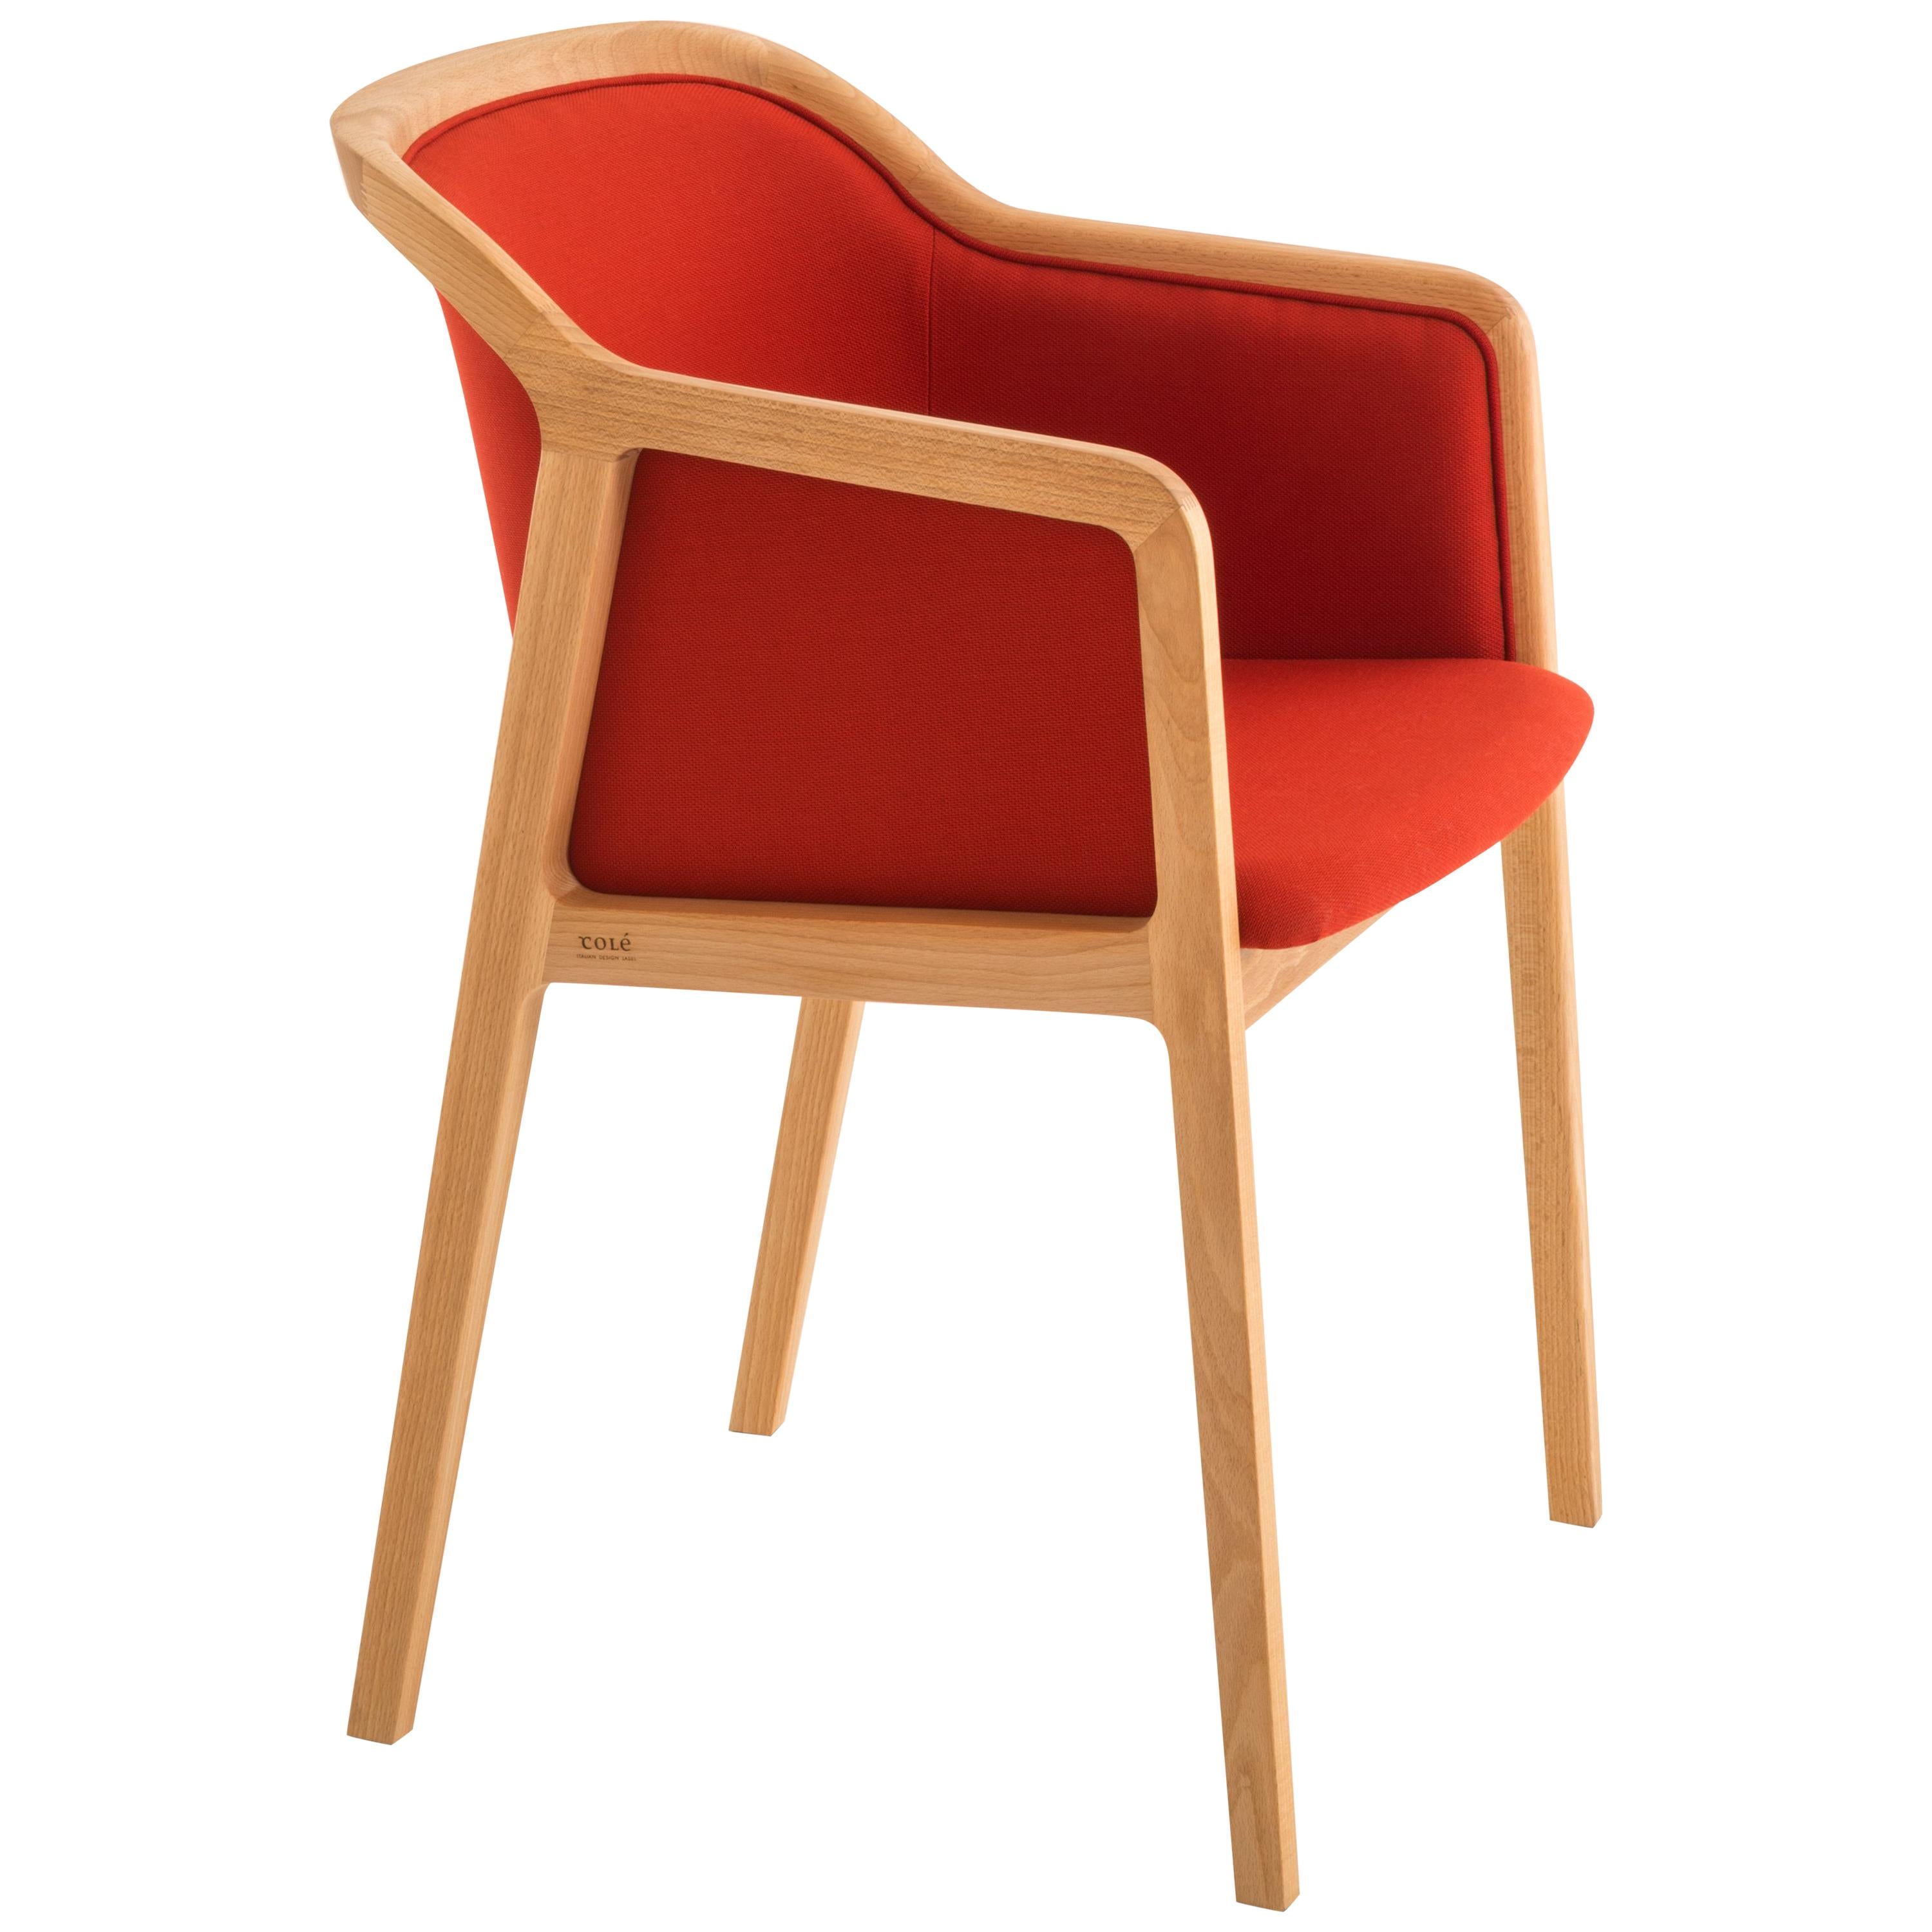 Petit fauteuil souple viennois, design contemporain inspiré des chaises traditionnelles en vente